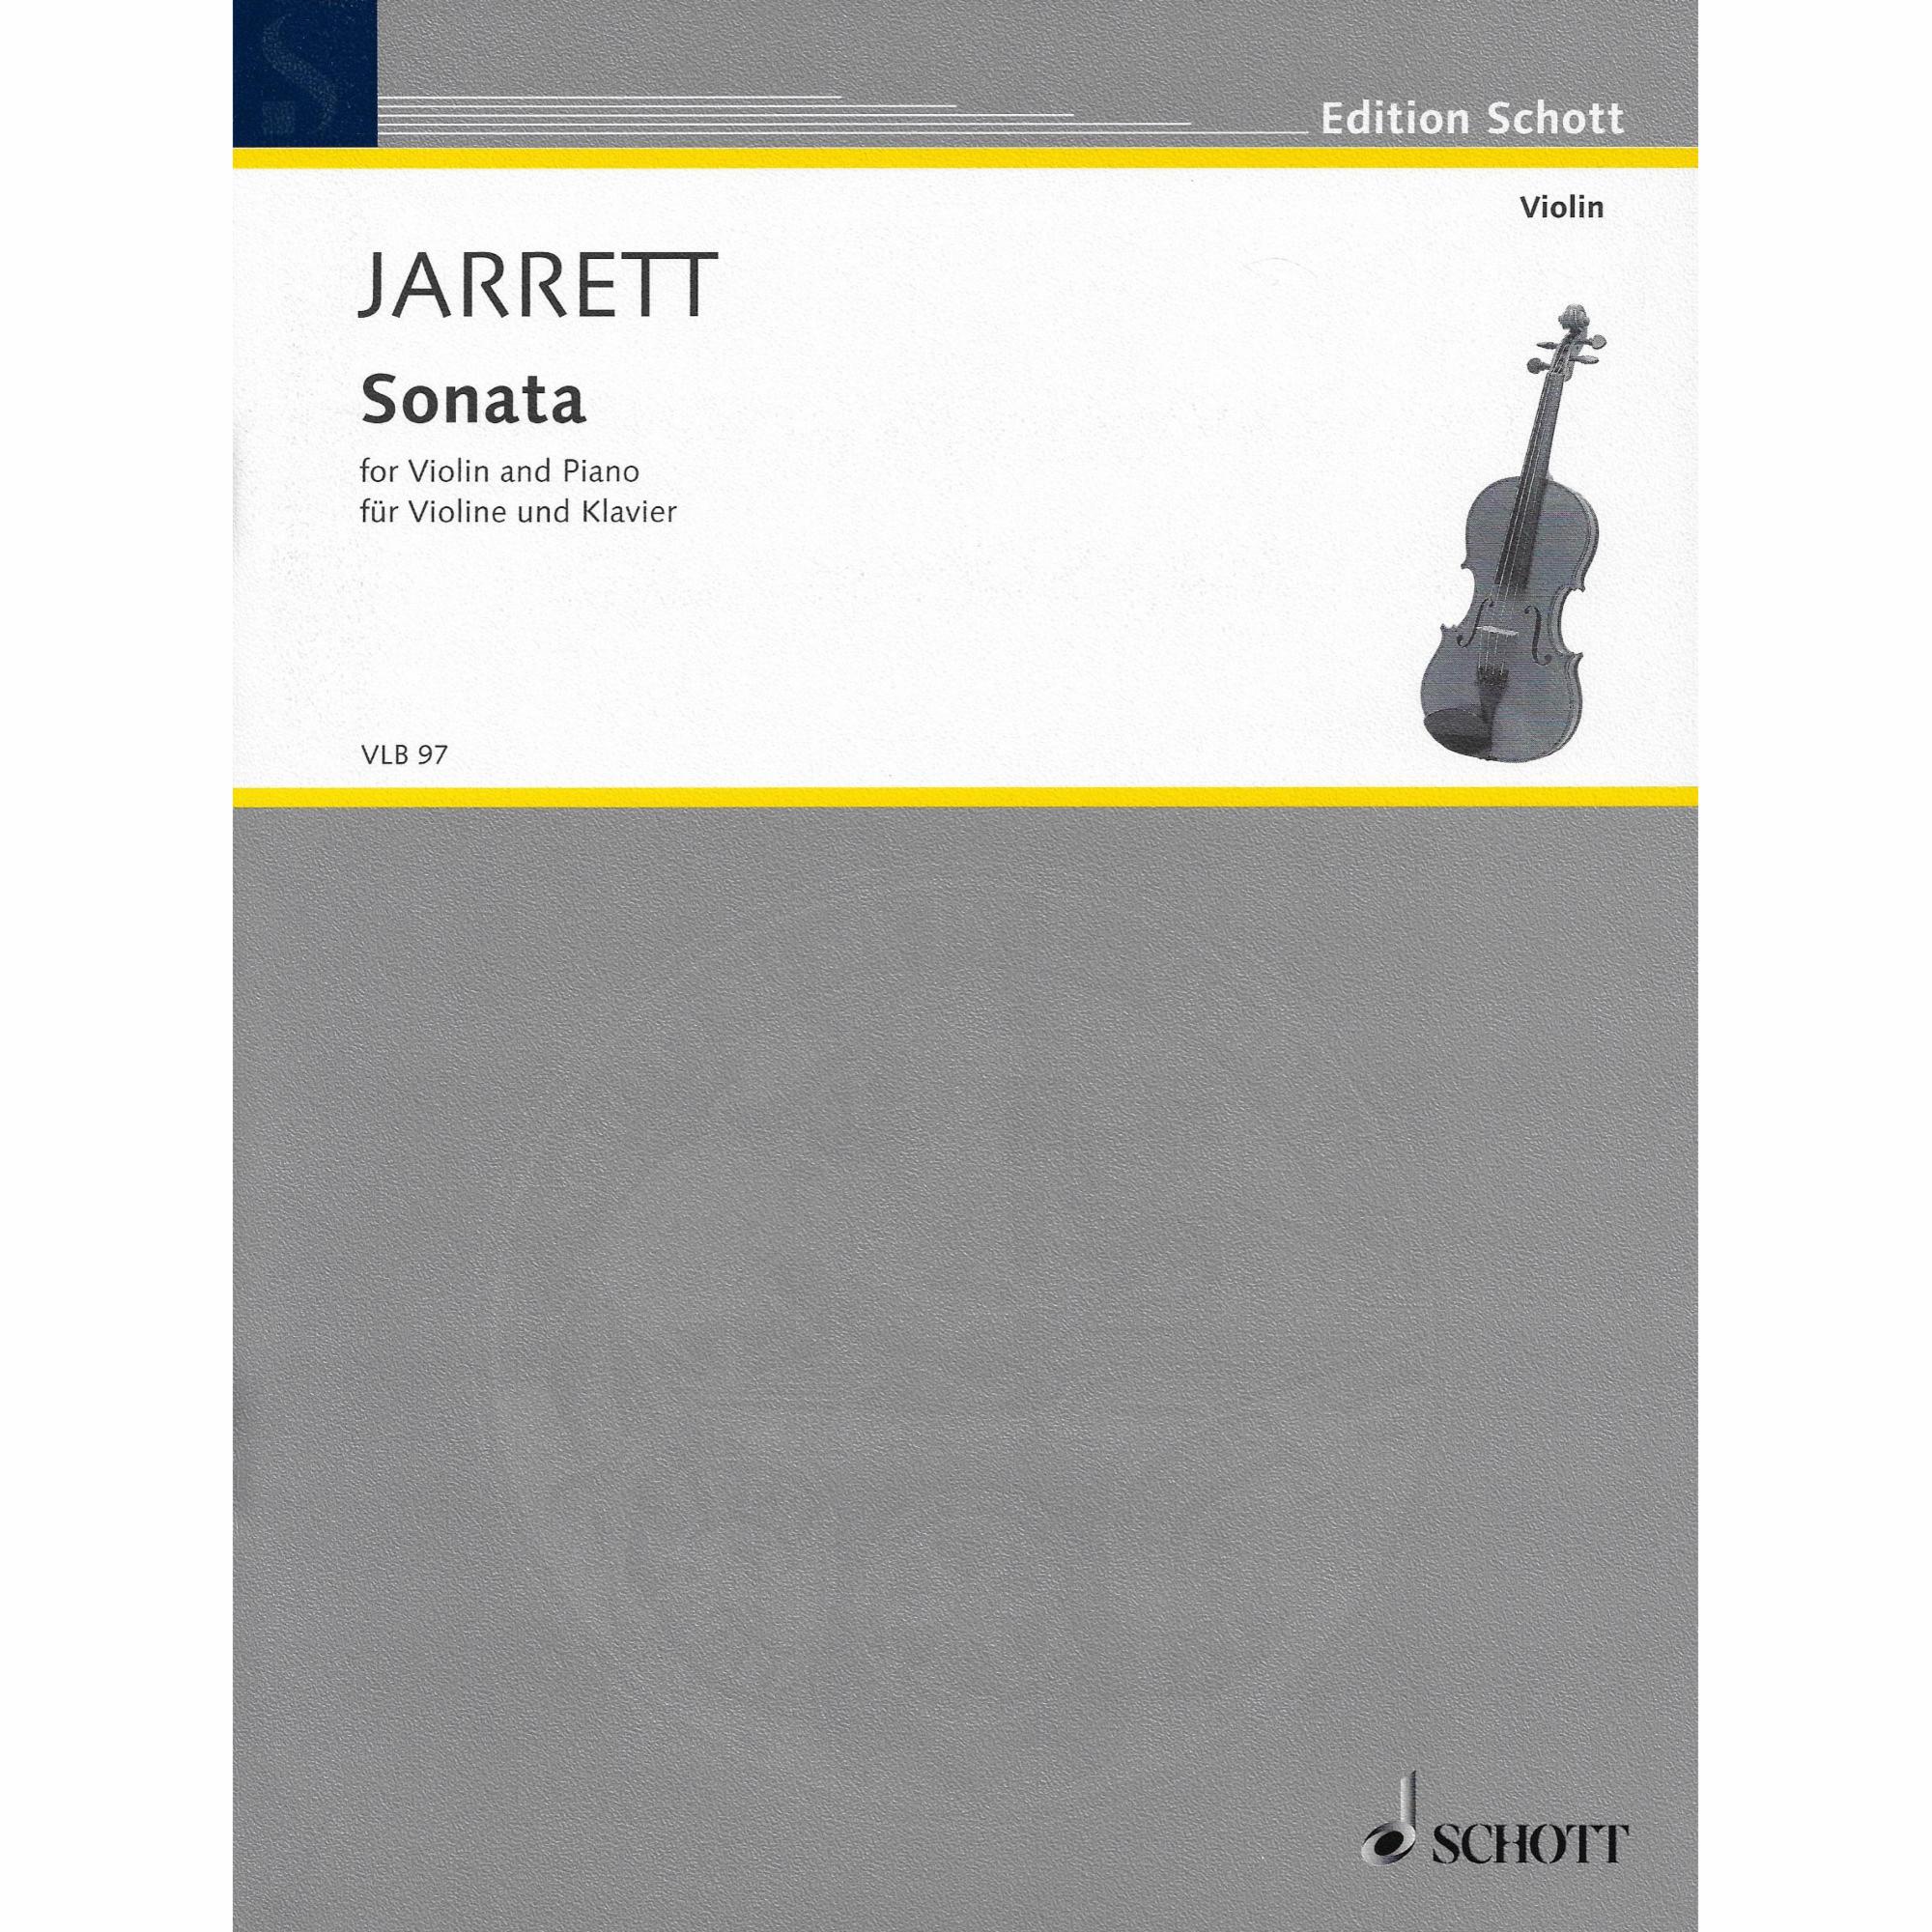 Jarrett -- Sonata for Violin and Piano